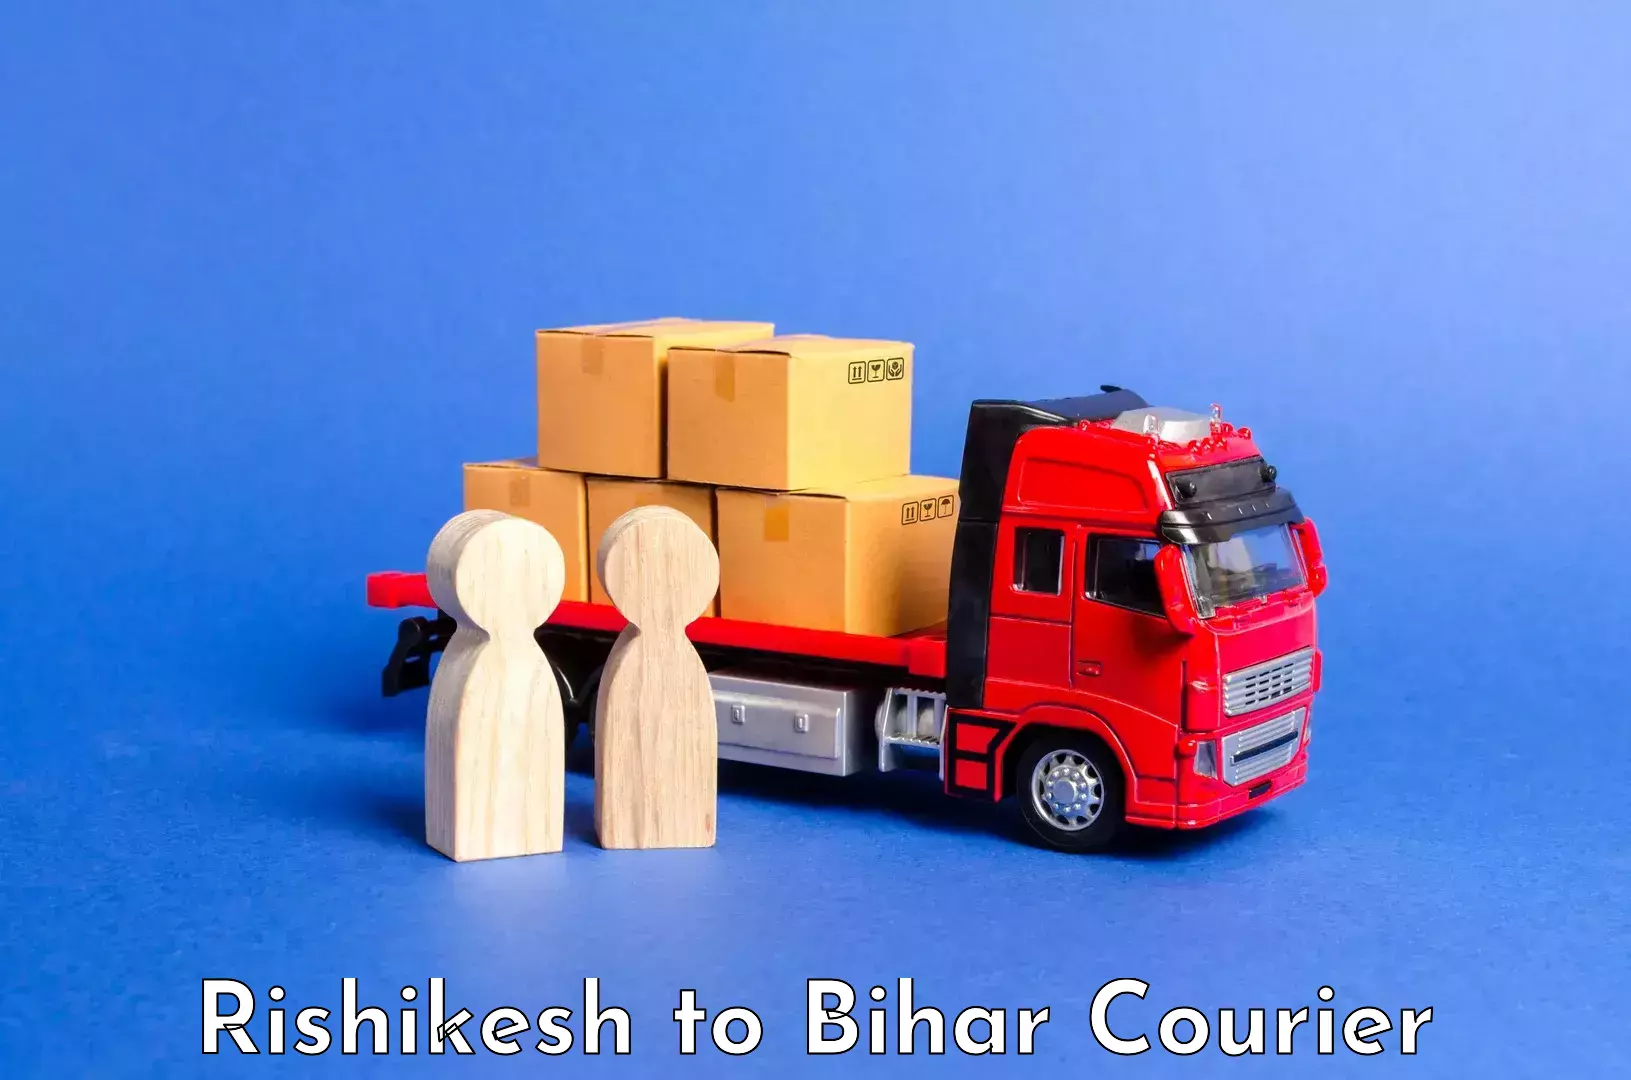 Luggage delivery network Rishikesh to Vaishali